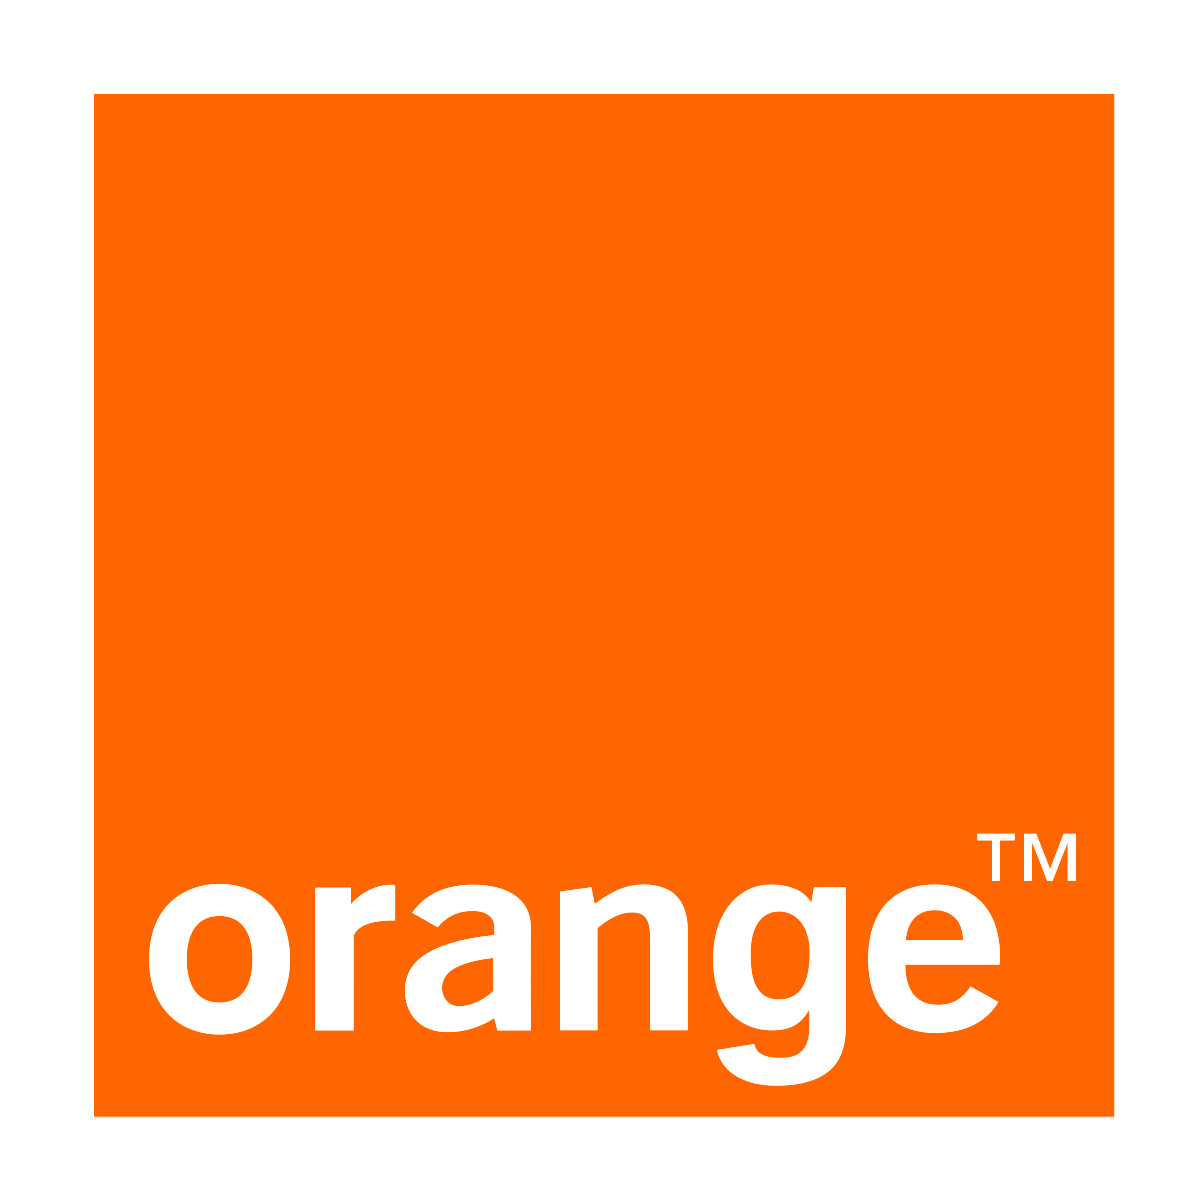 Orange Logo PNG High Definition Photo Image pngteam.com